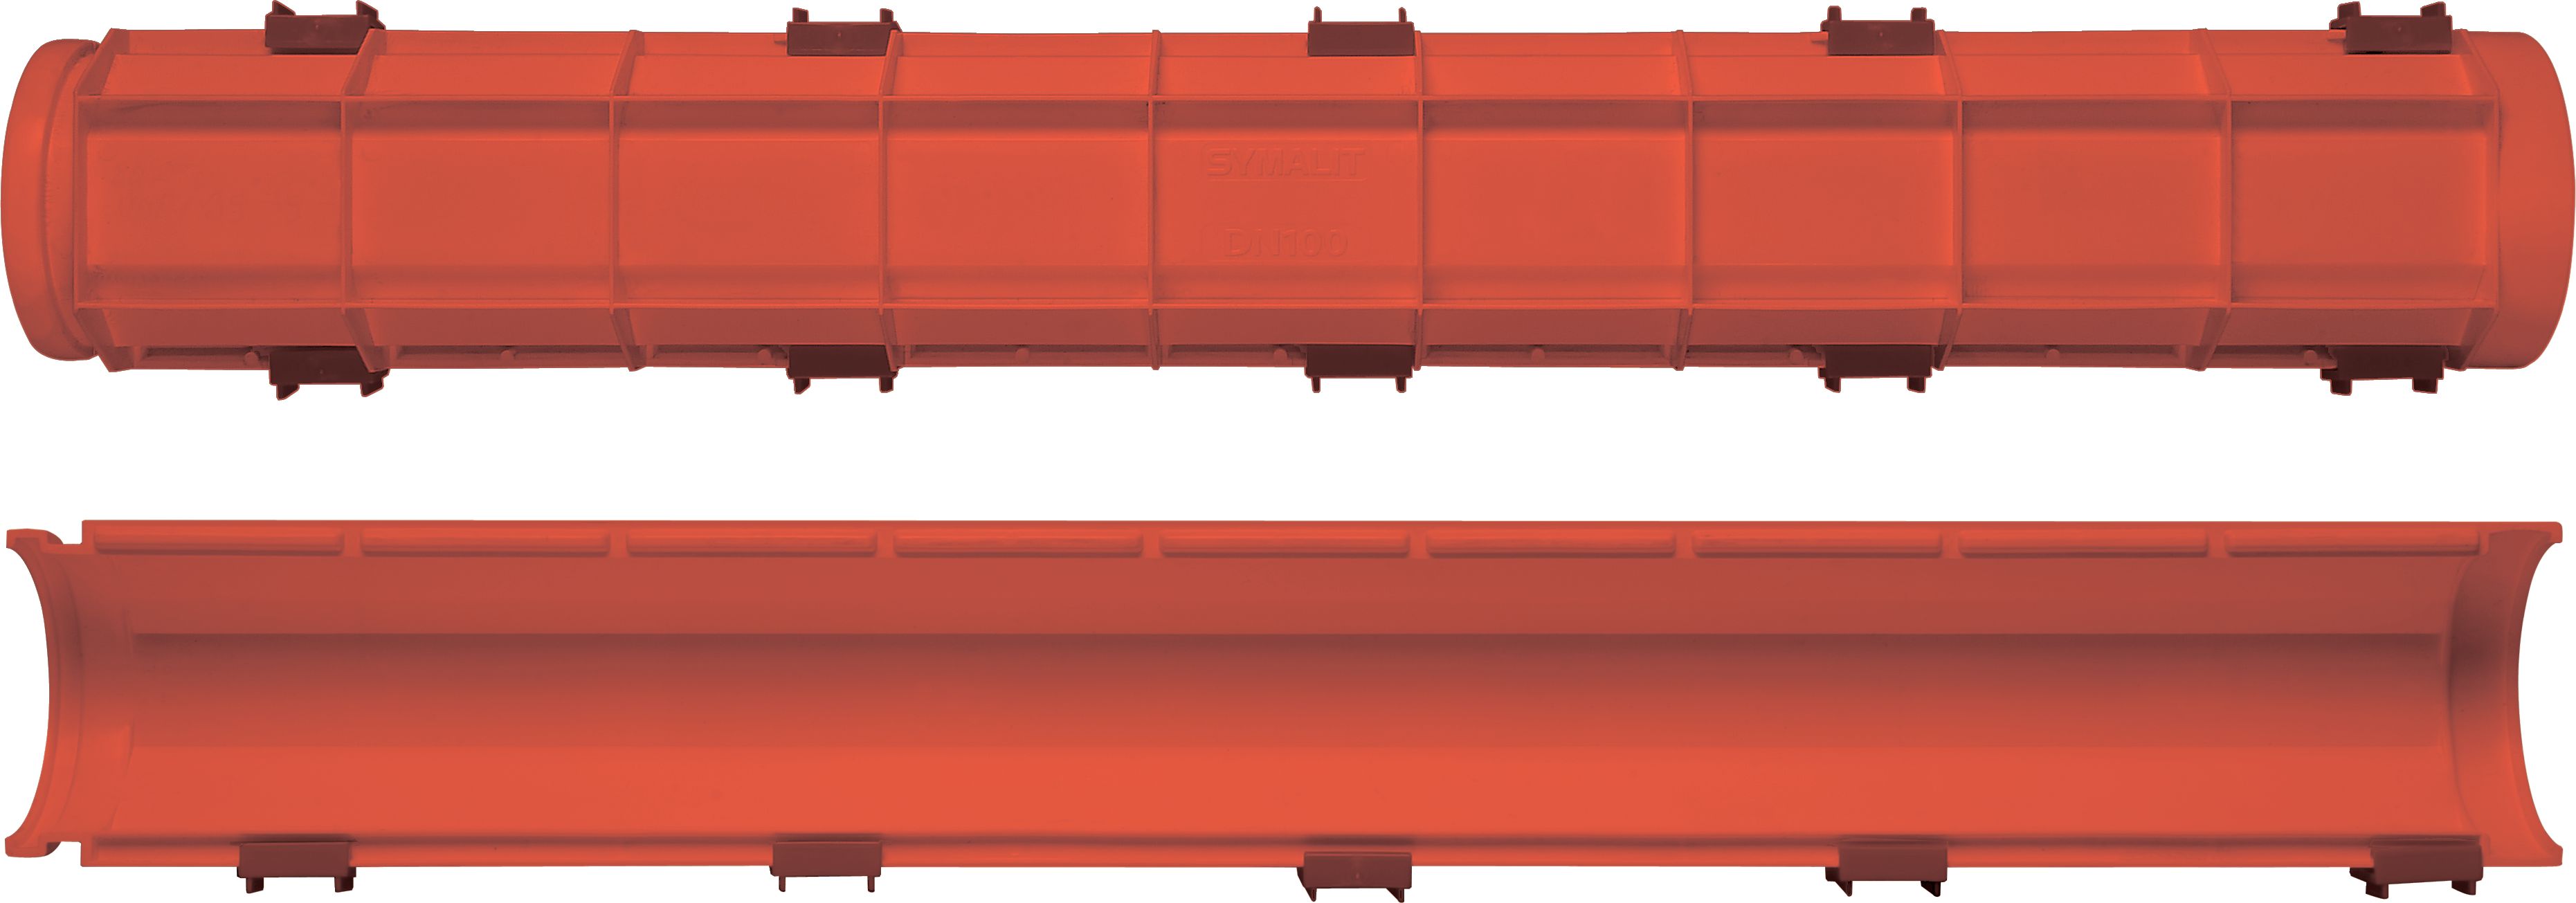 SYSPRO-Kabelhalbschalen HDPE rot NW: 150mm L:1m inkl. 3 Verschlussklemmen - Kabelschutz Formstücke netto